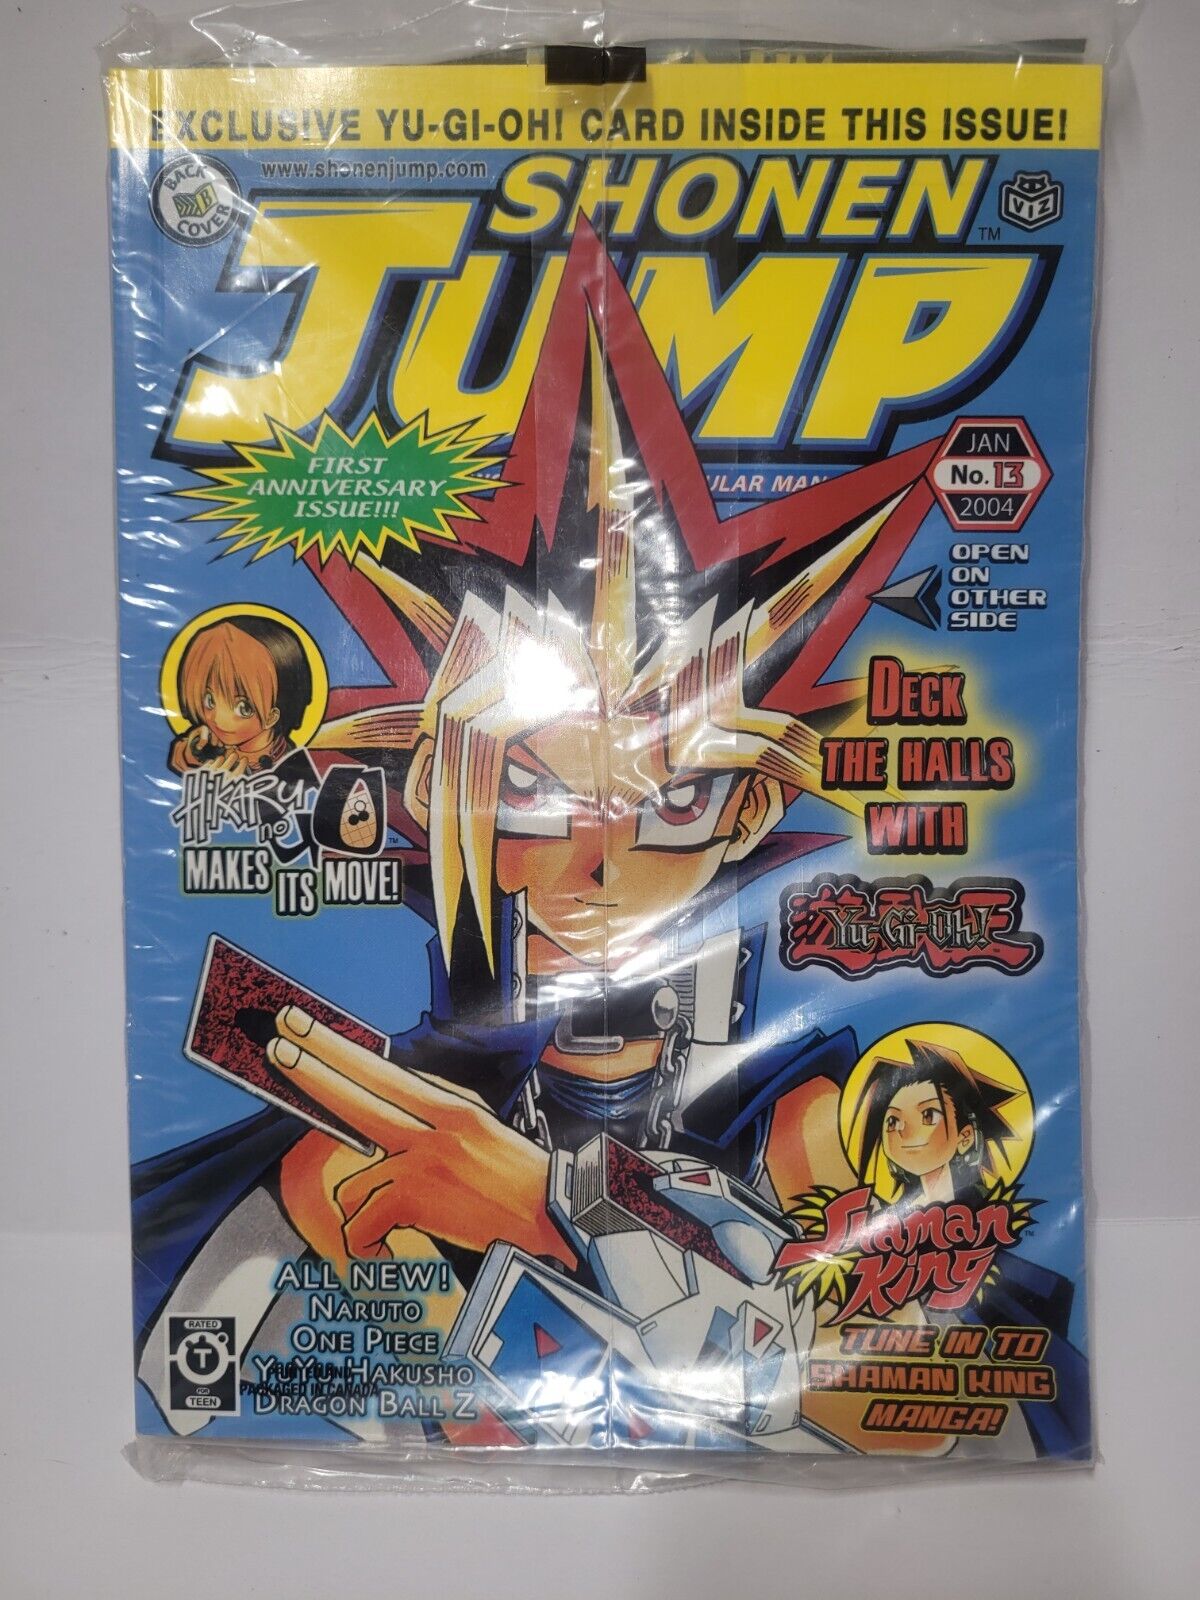 SEALED original 2004 January SHONEN JUMP manga with YU-GI-OH PROMO inside